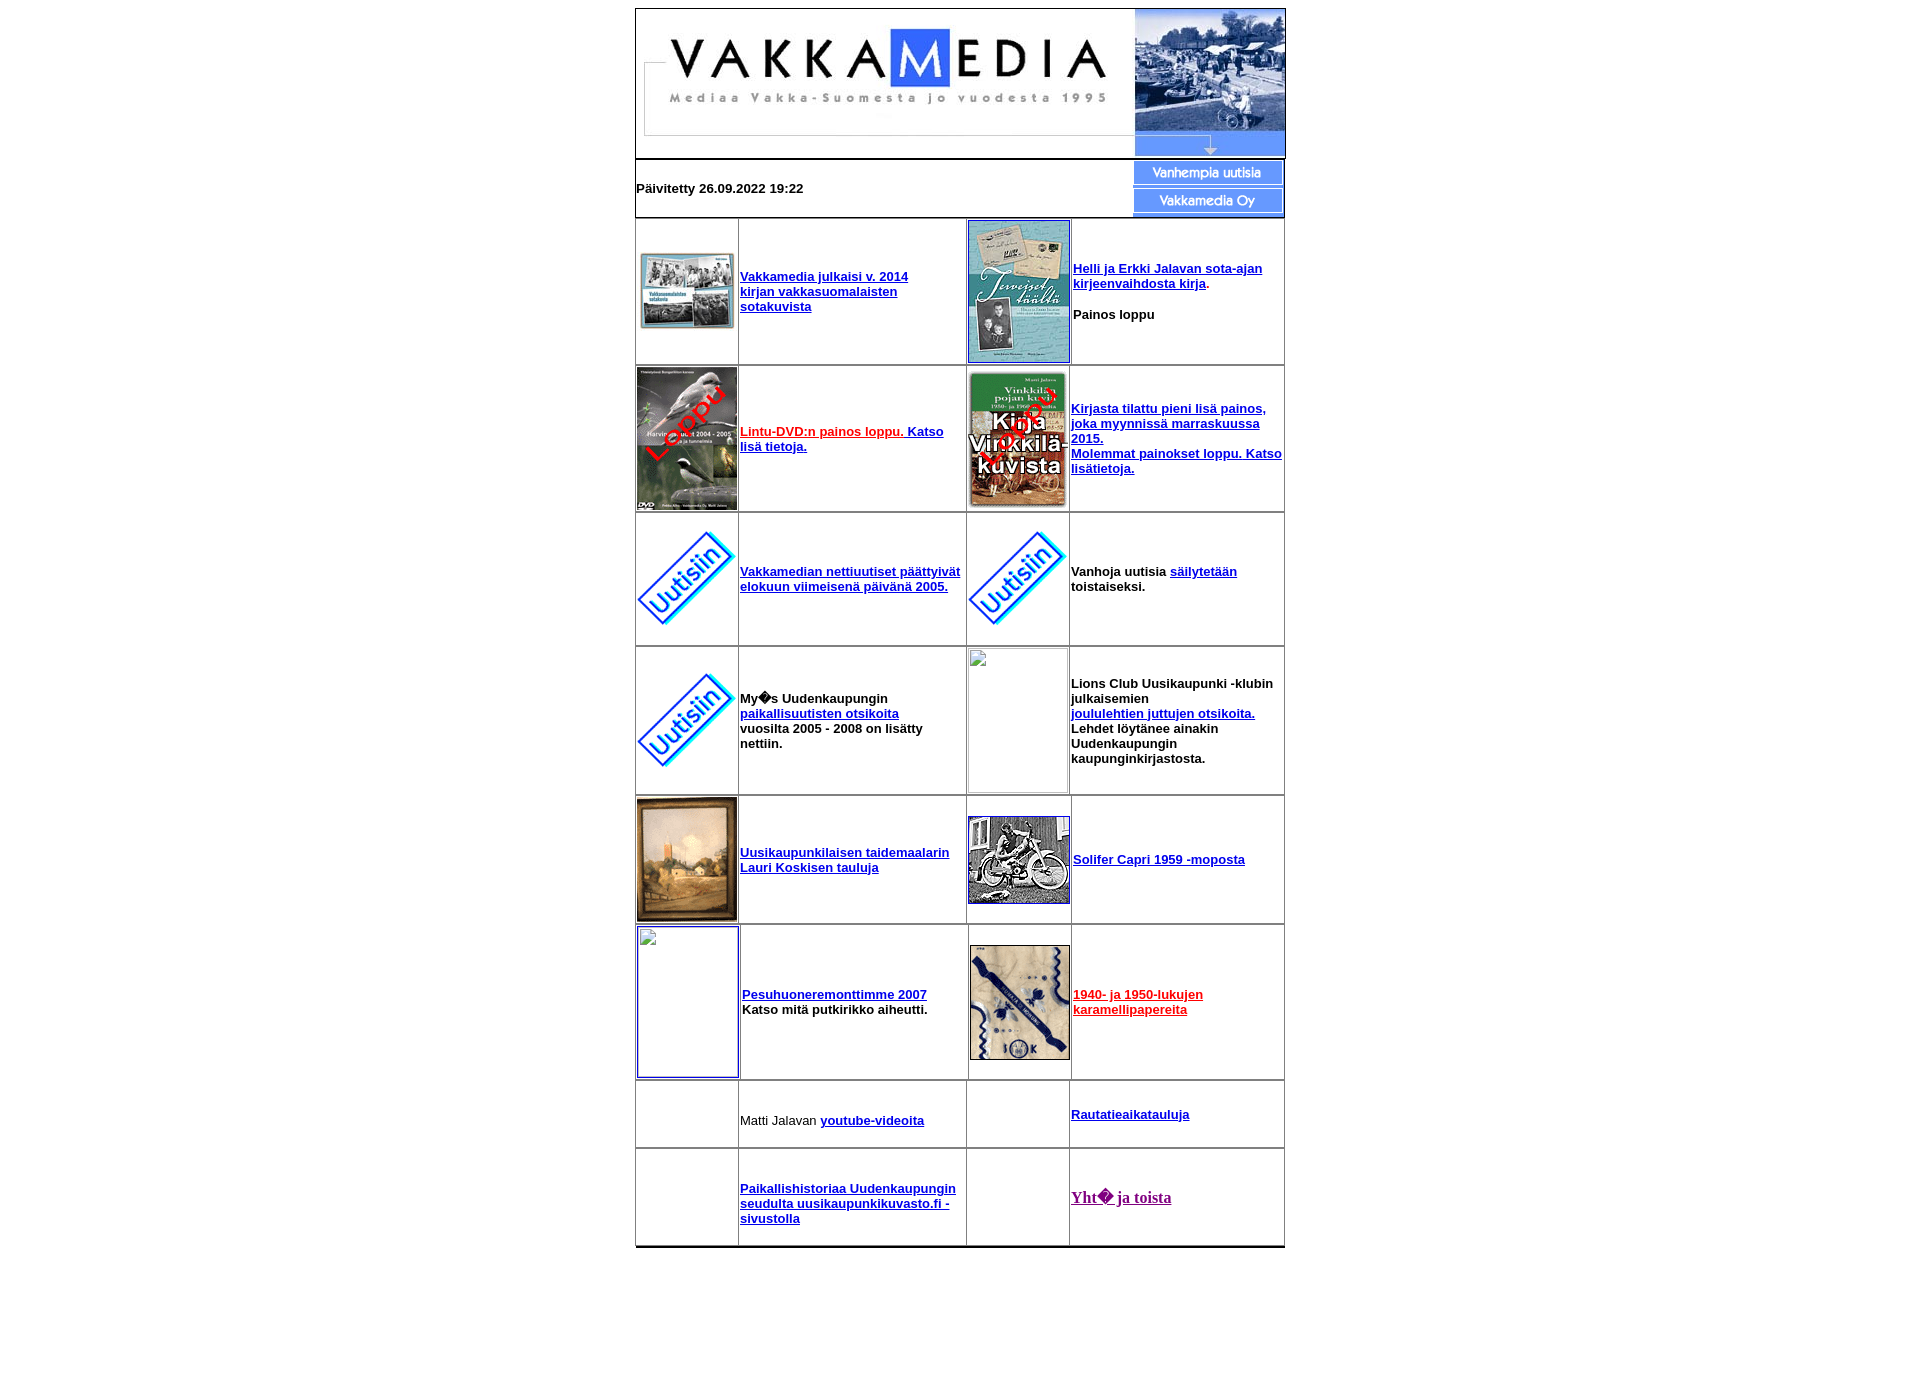 Skärmdump för vakkamedia.fi